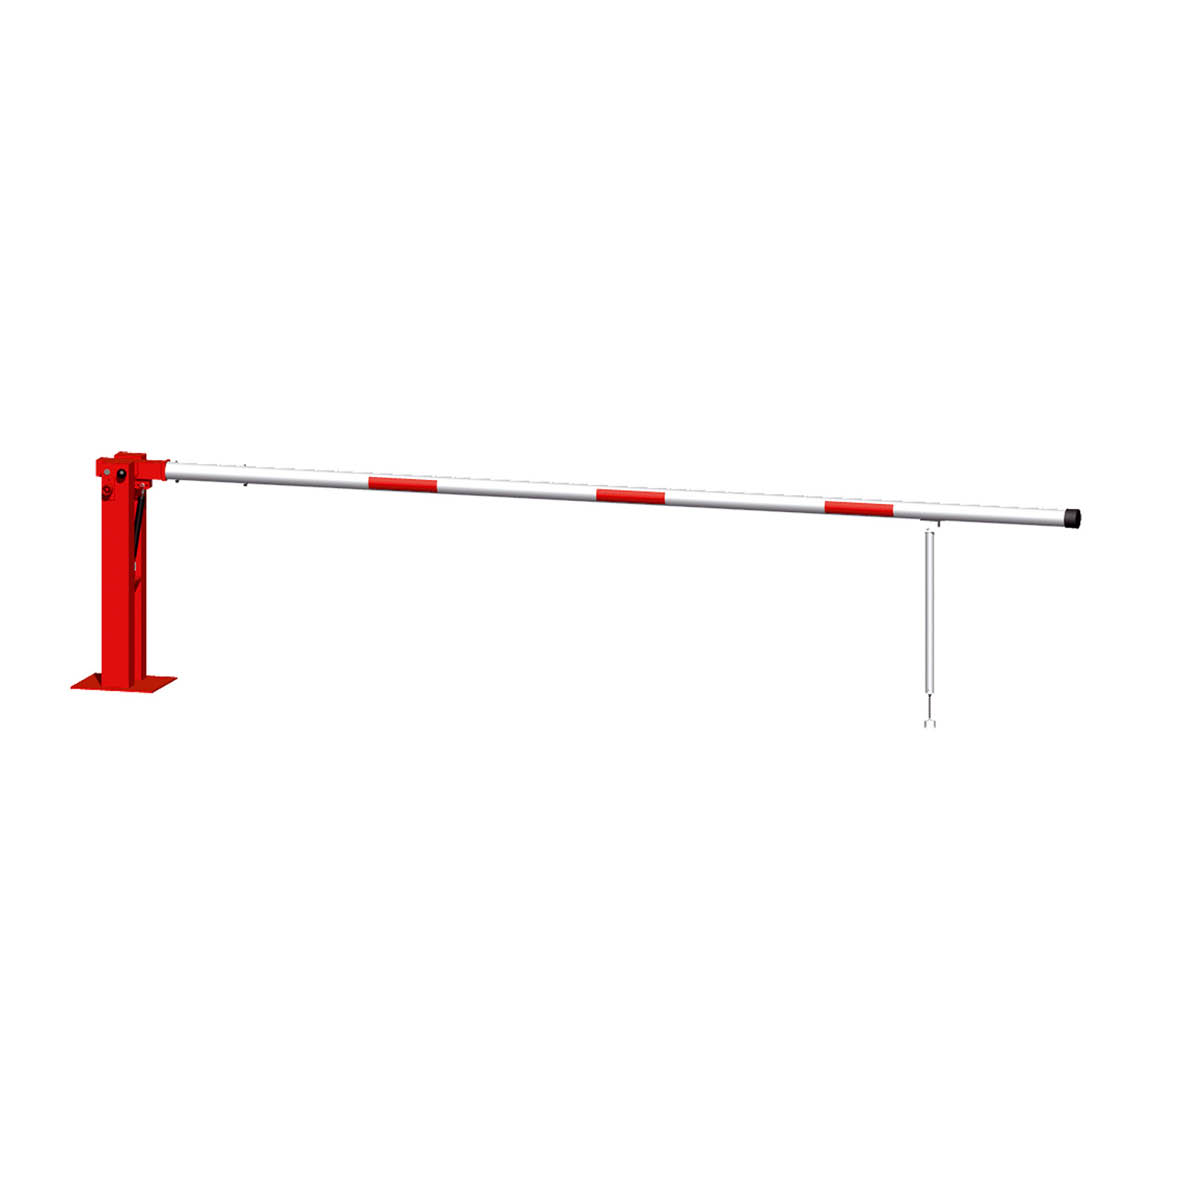 Handschranke Vorhängeschloss, mit Gasdruckfeder und Pendelstütze, 700 cm, verzinkt, rot-weiss, 55 kg